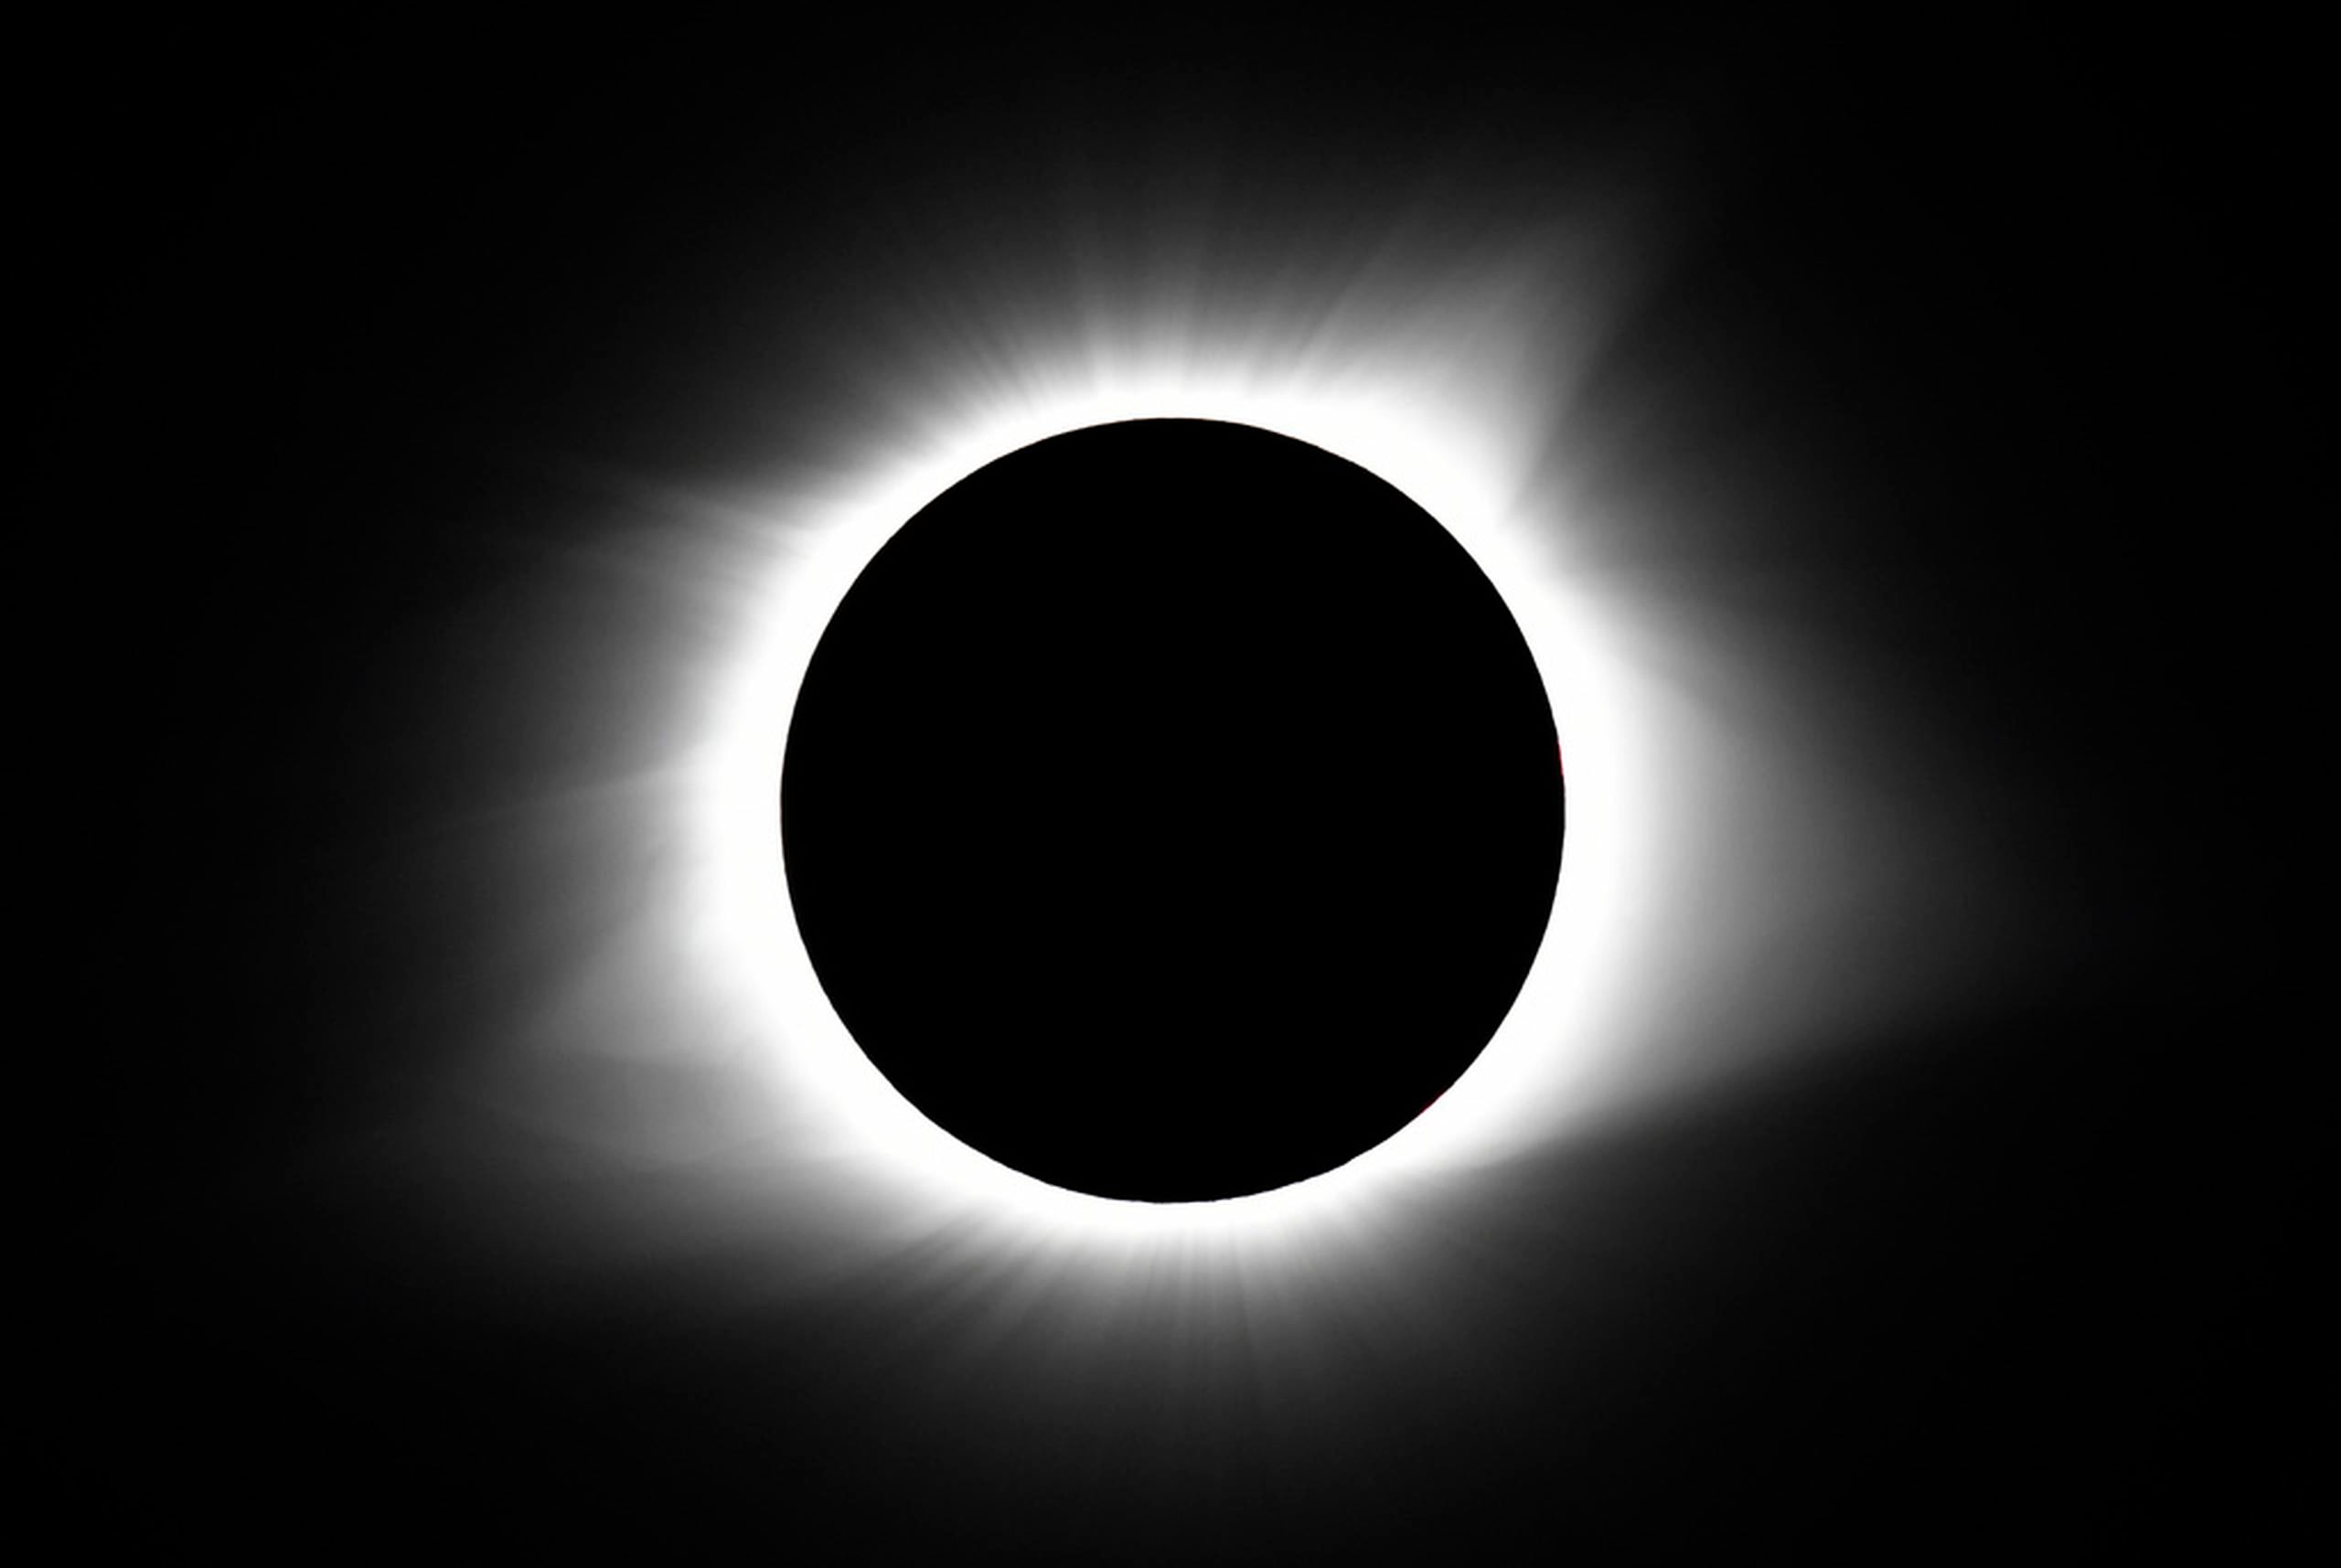 El eclipse comenzará a las 15:16 hora local (3:16 p.m.) en Nueva York, cuando el sol se cubrirá en un 90%, según datos de la NASA.